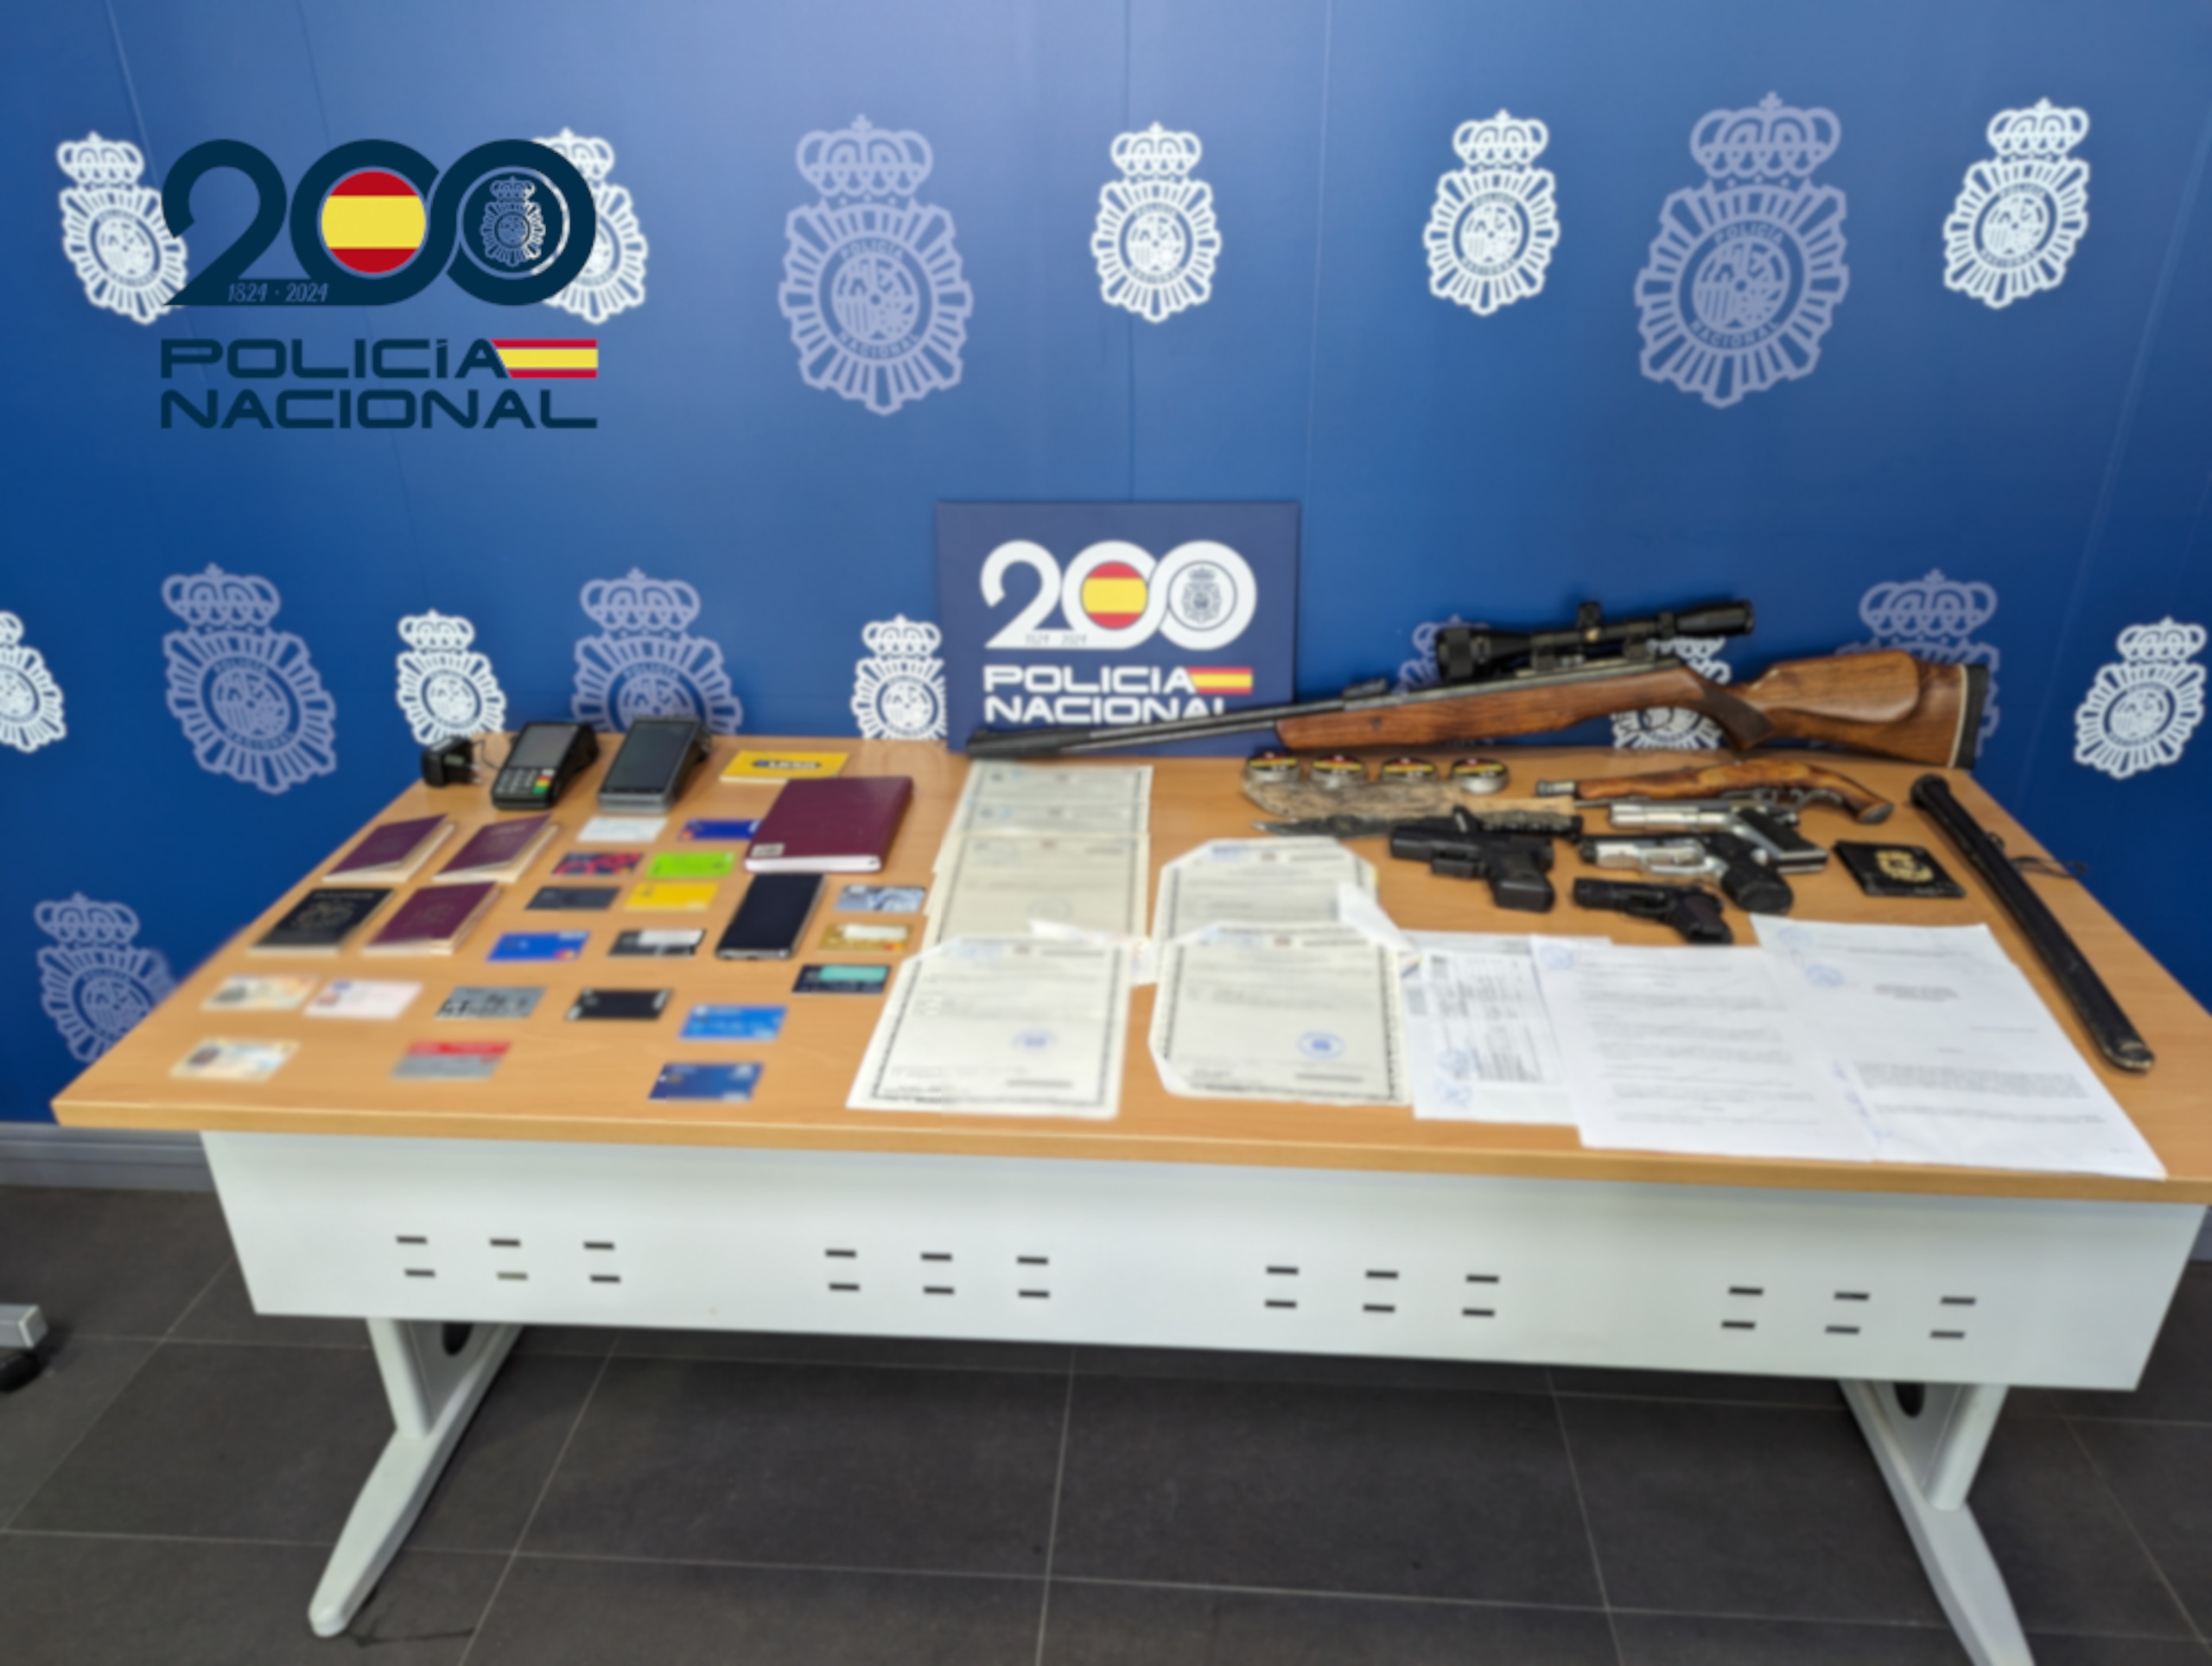 La Policía de Alicante desmantela un grupo criminal que utilizaba empresas ficticias para explotar inmigrantes